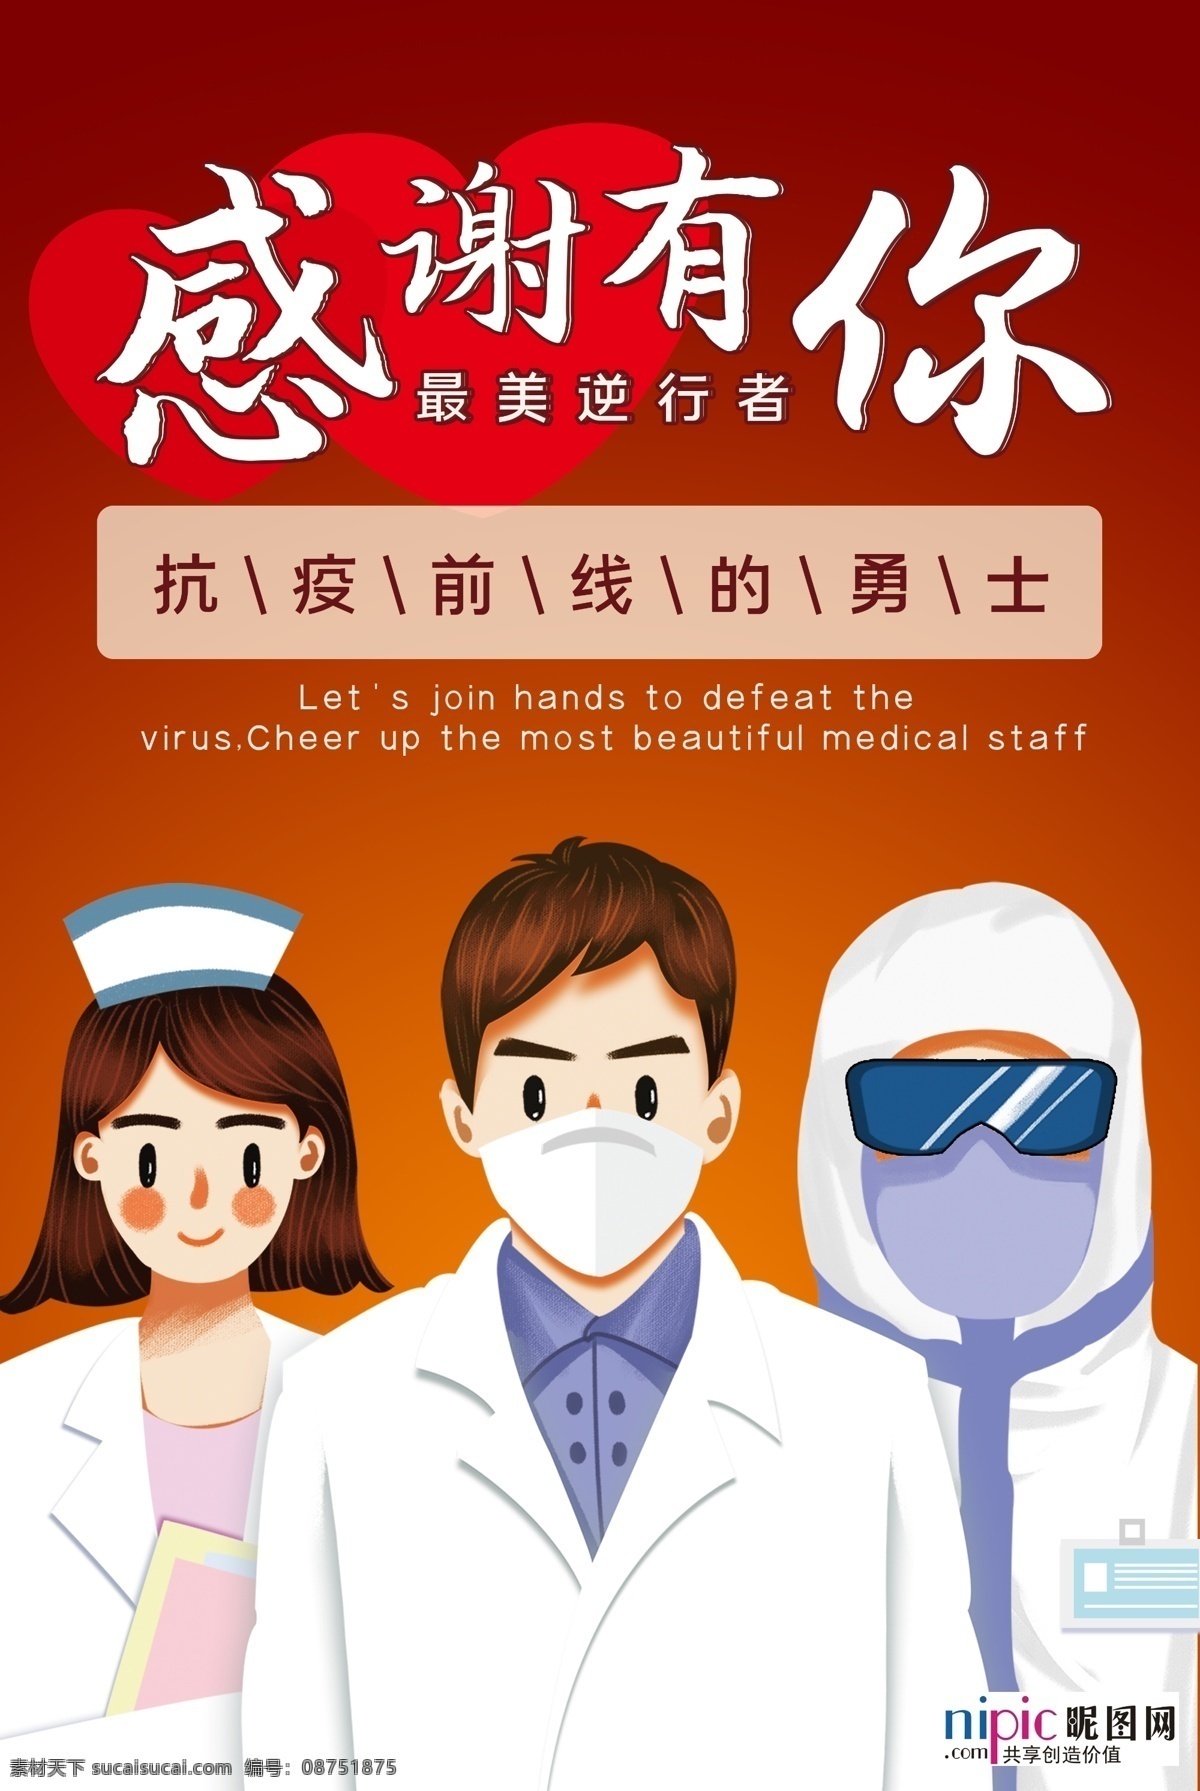 预防 武汉 冠状 肺炎 流感 病毒 海报 洗手 口罩 84消毒液 酒精 医院 护士 爱心 手套 体温 加油